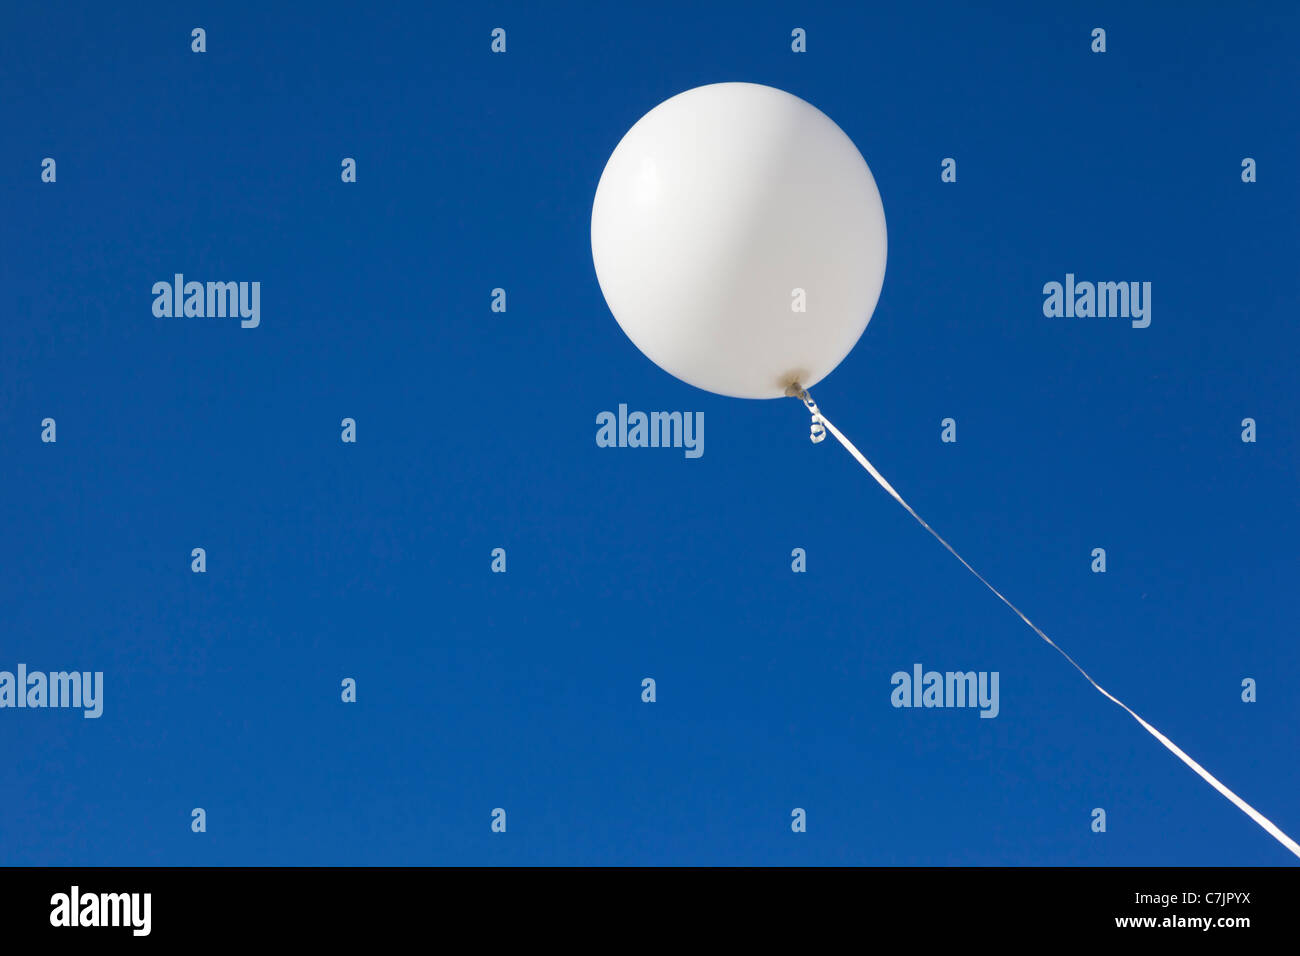 Palloncino bianco immagini e fotografie stock ad alta risoluzione - Alamy